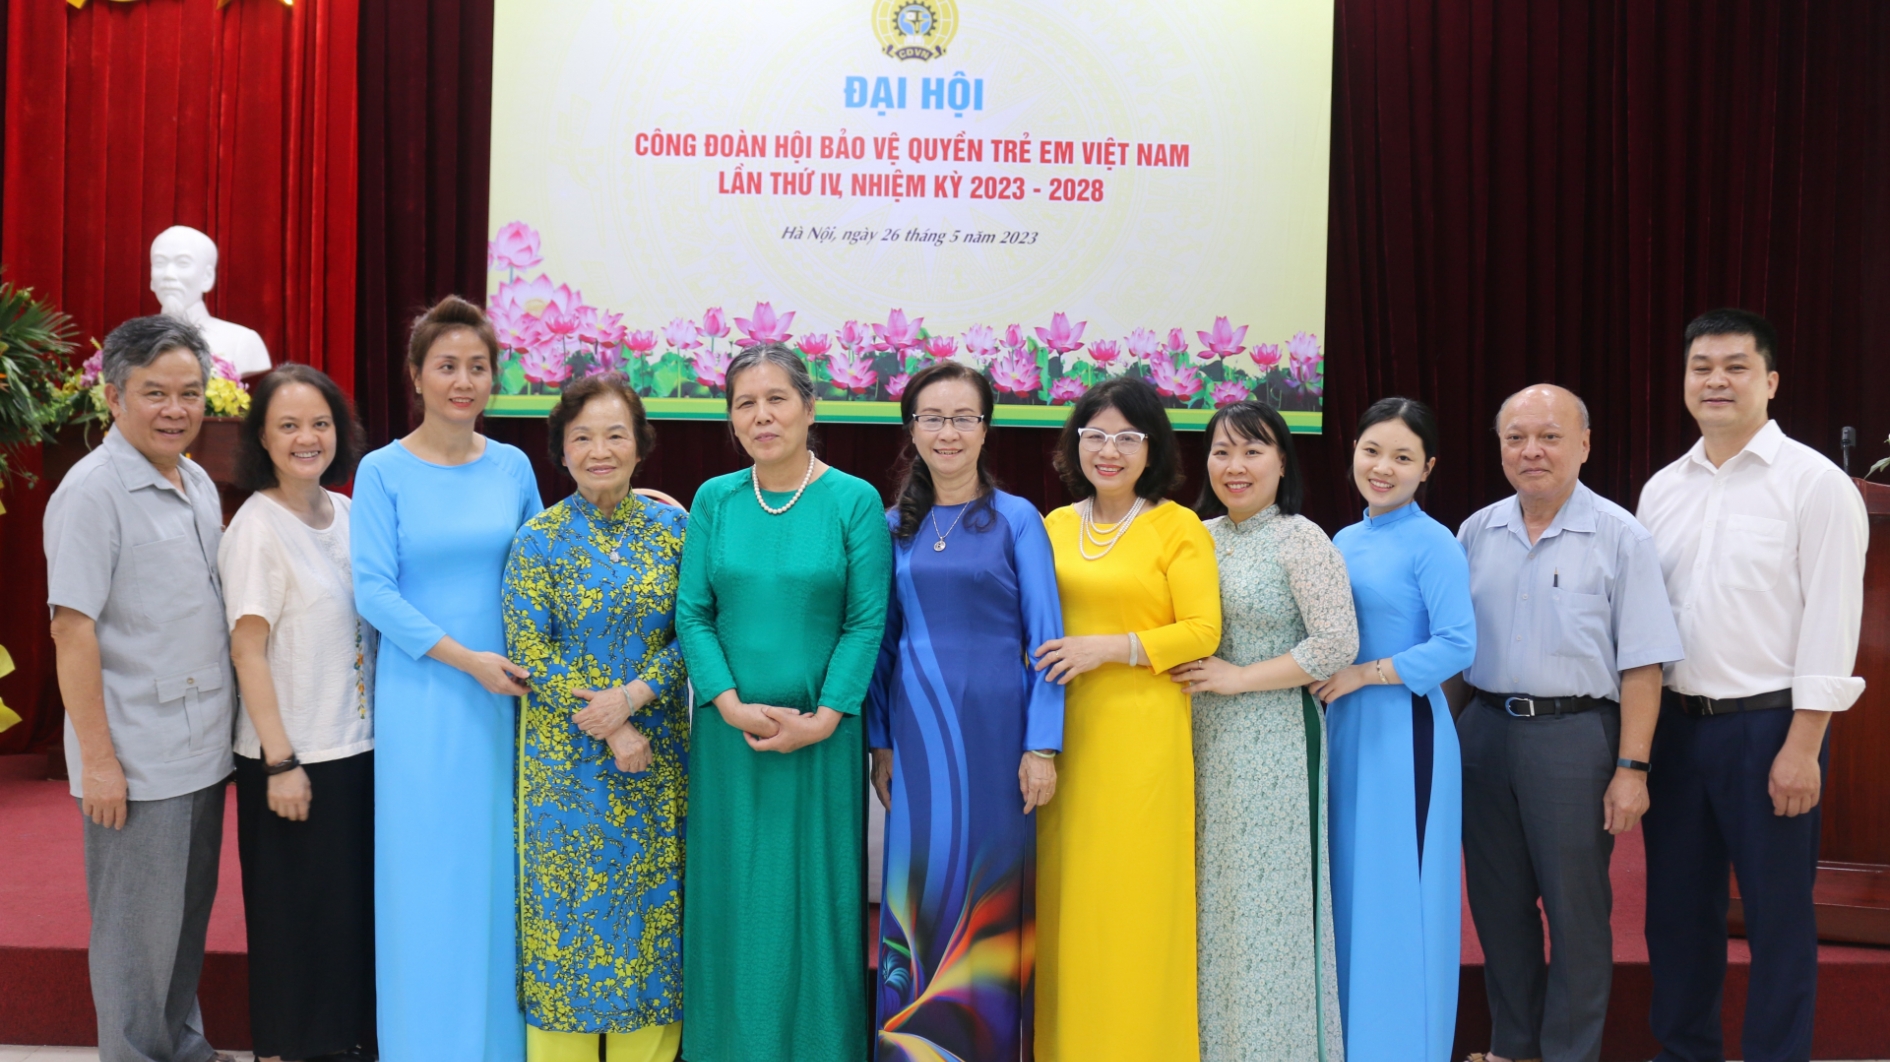 Hội Bảo vệ quyền trẻ em Việt Nam tổ chức Đại hội Công đoàn lần thứ IV